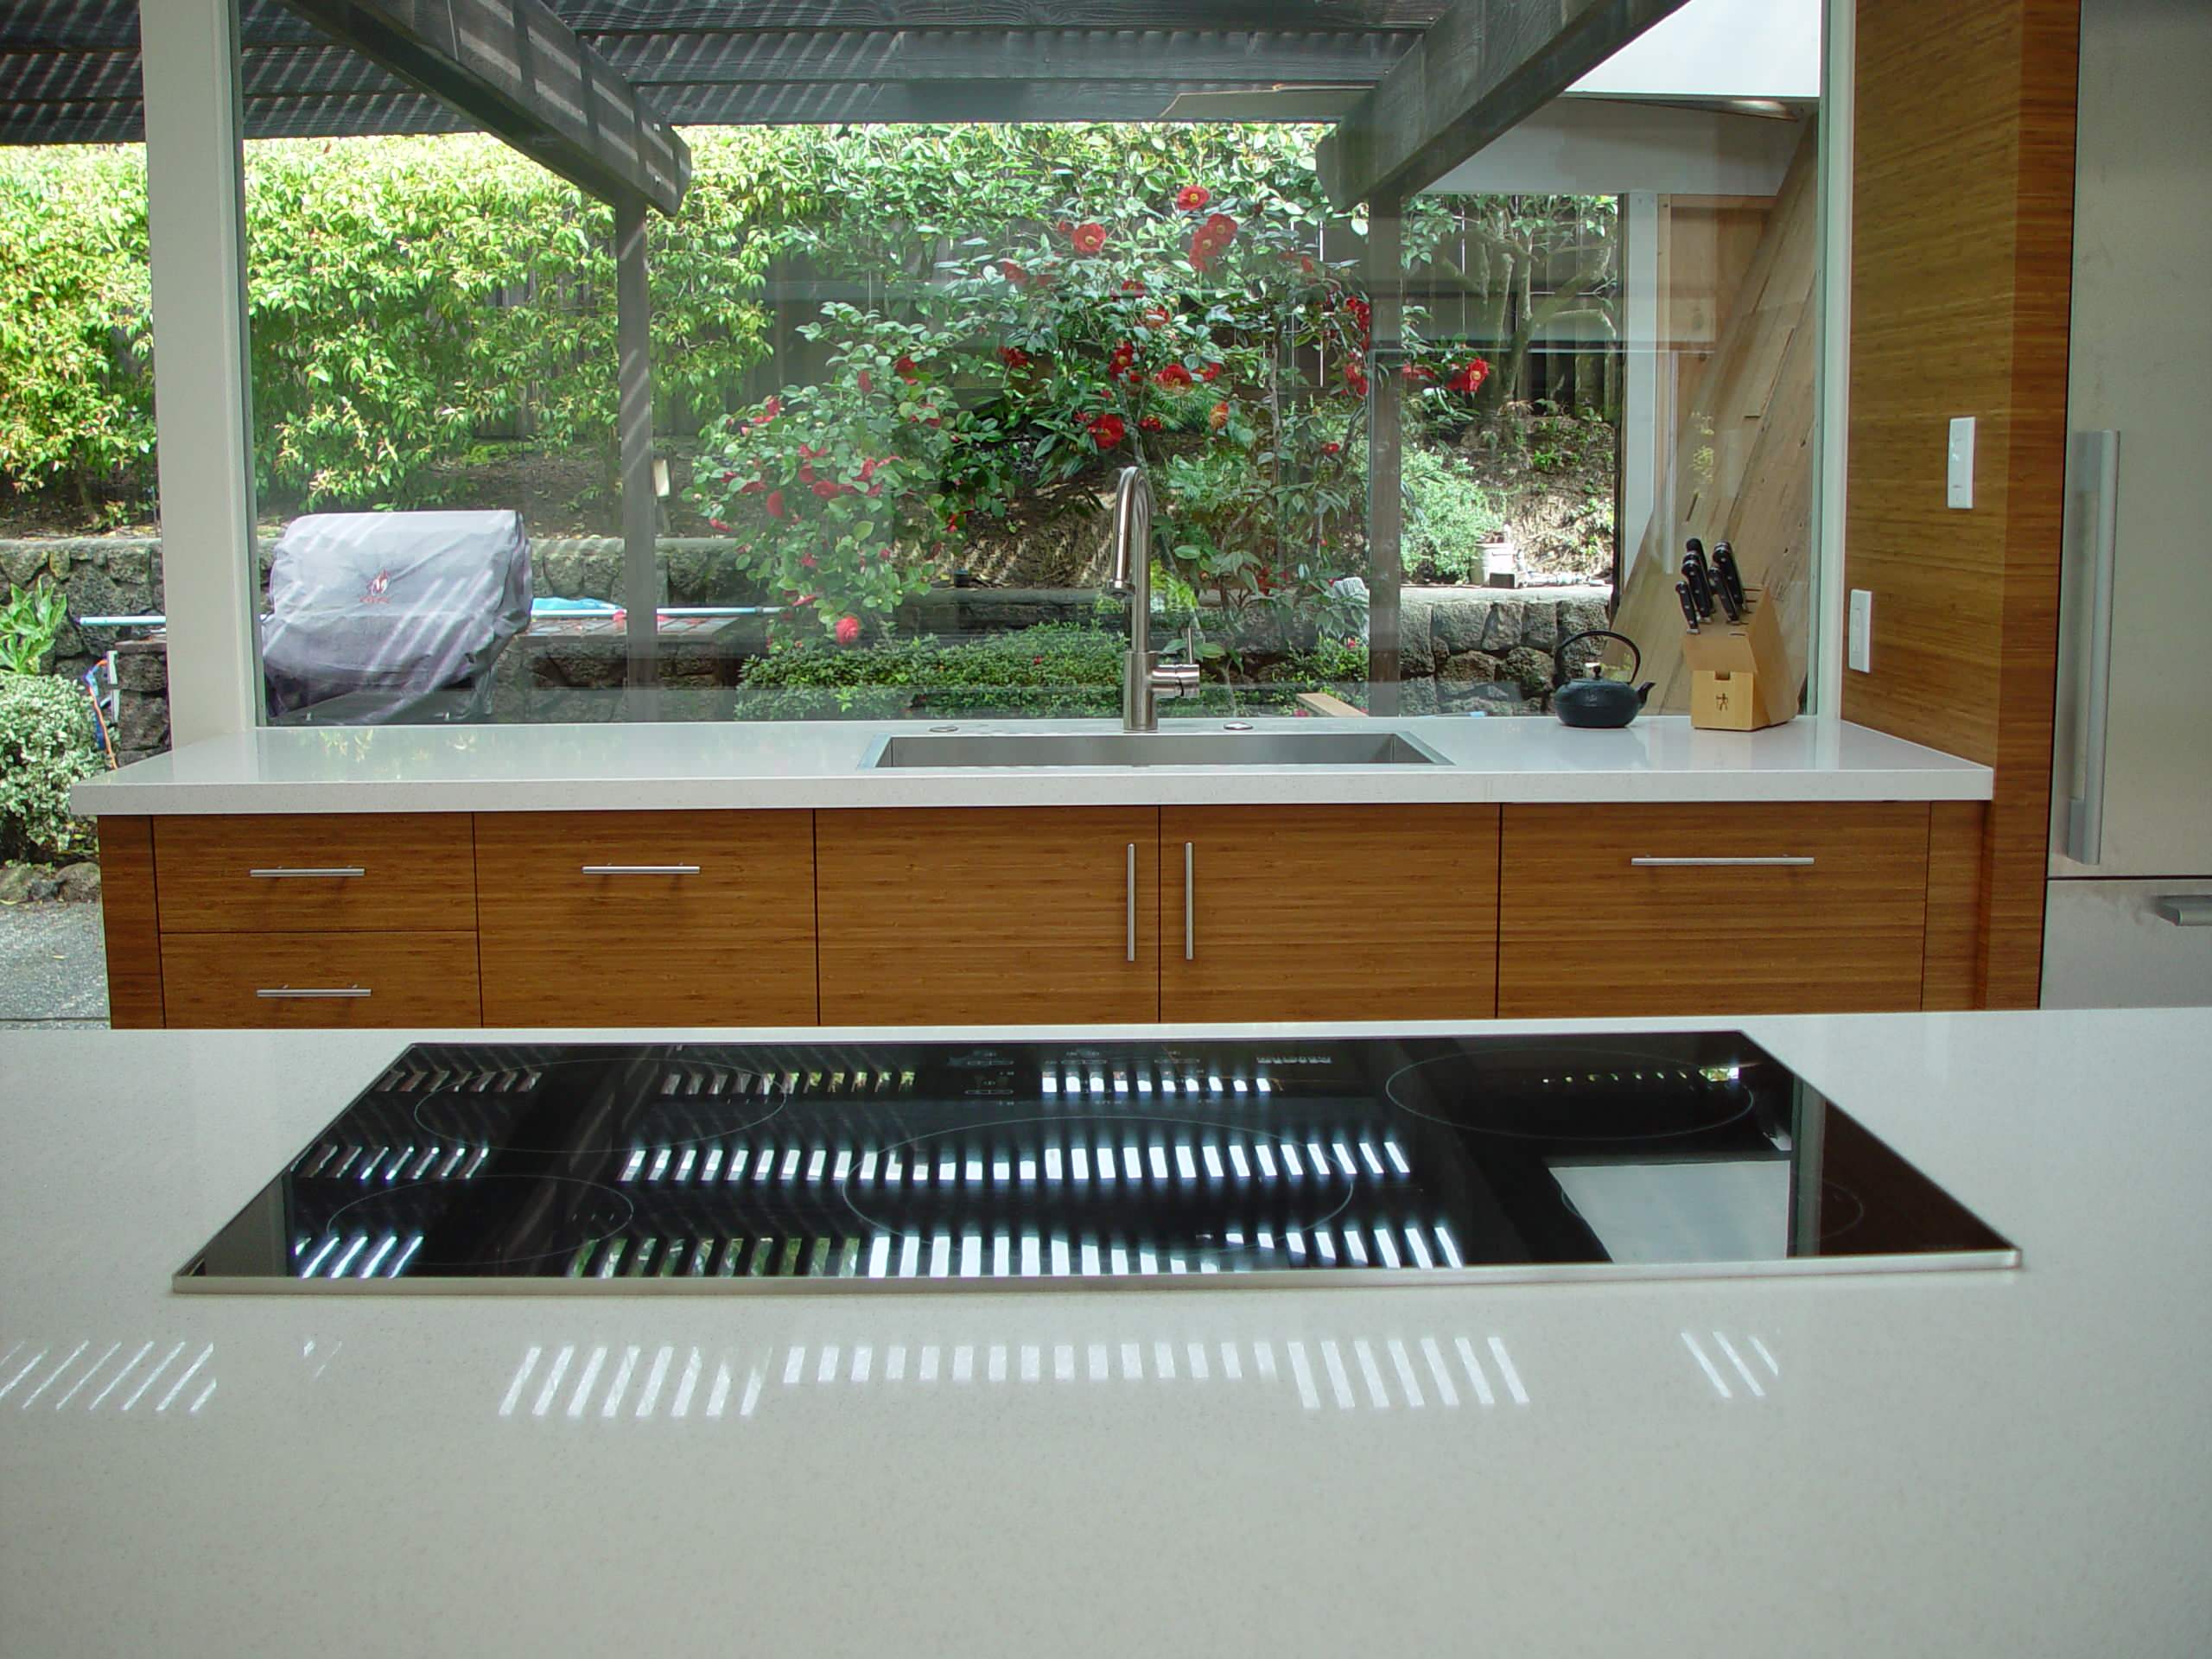 Mid Century Modern Kitchen - Cooktop + Sink (KPKM)